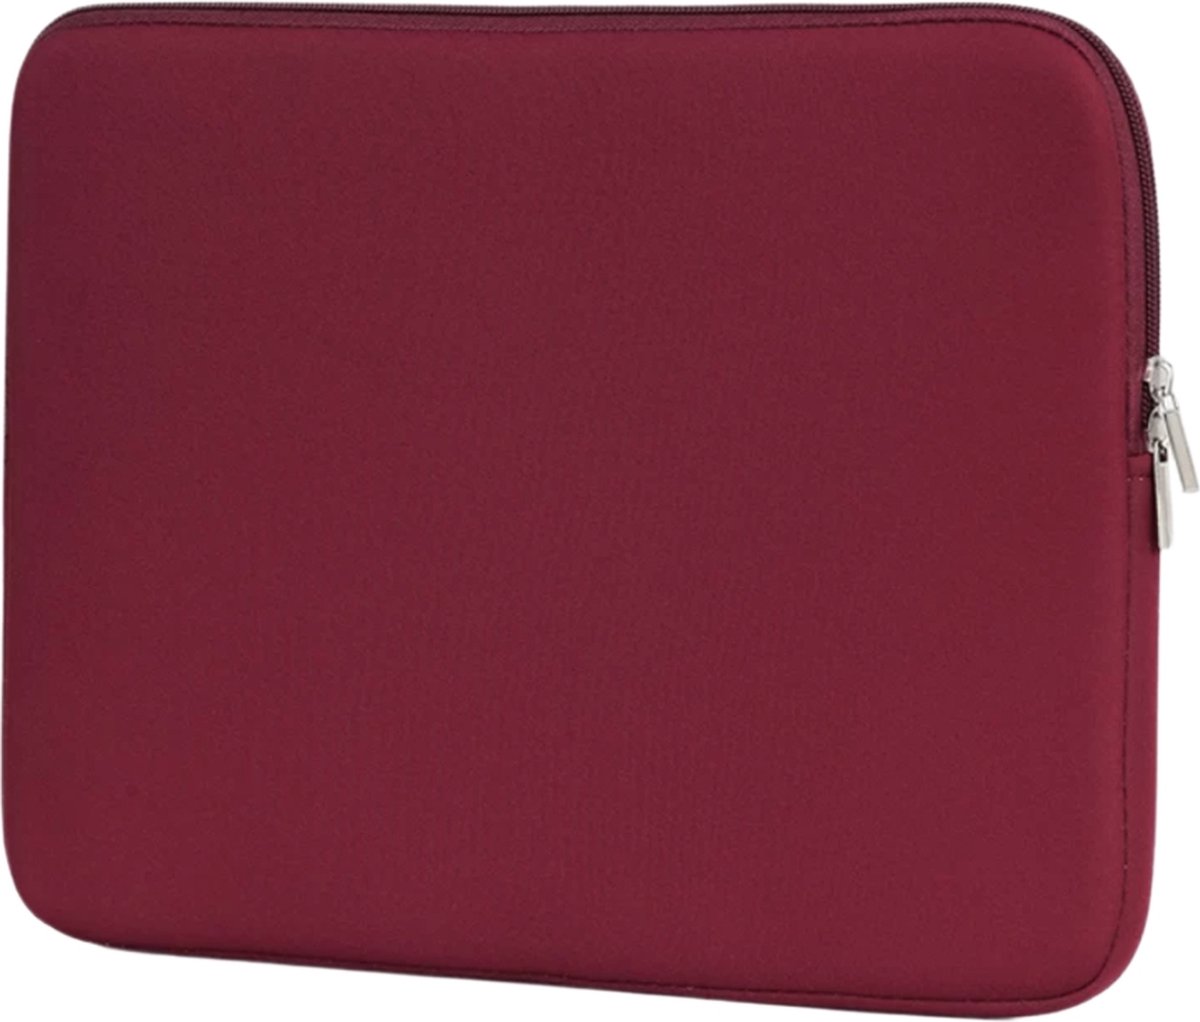 Laptop Sleeve – hoes geschikt voor laptop – 14,6 inch – bordeaux rood - Schokproof - Dubbele Ritssluiting